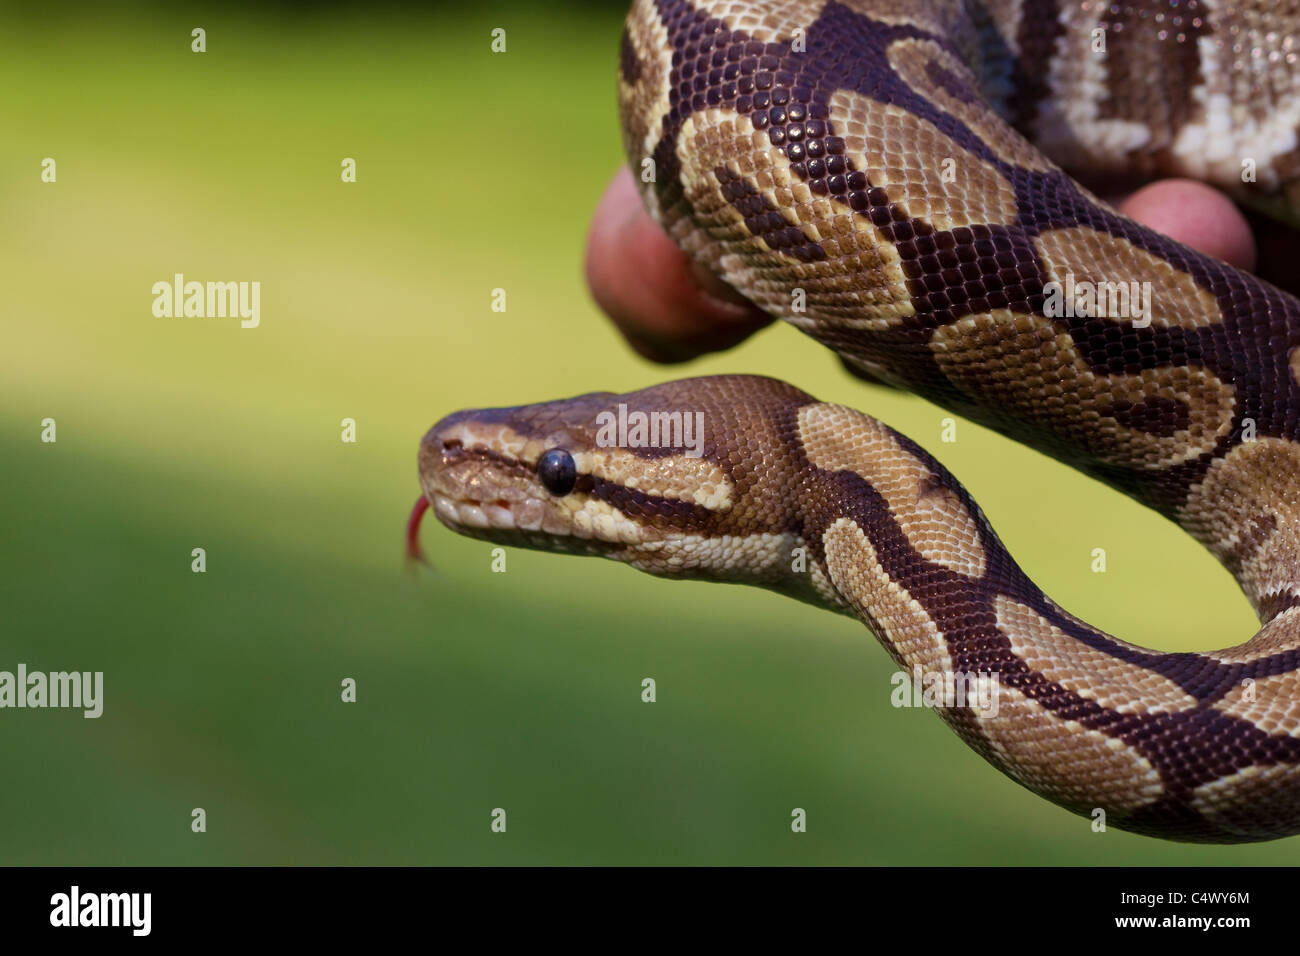 Ball serpent python de près dans la main, Python regius Banque D'Images